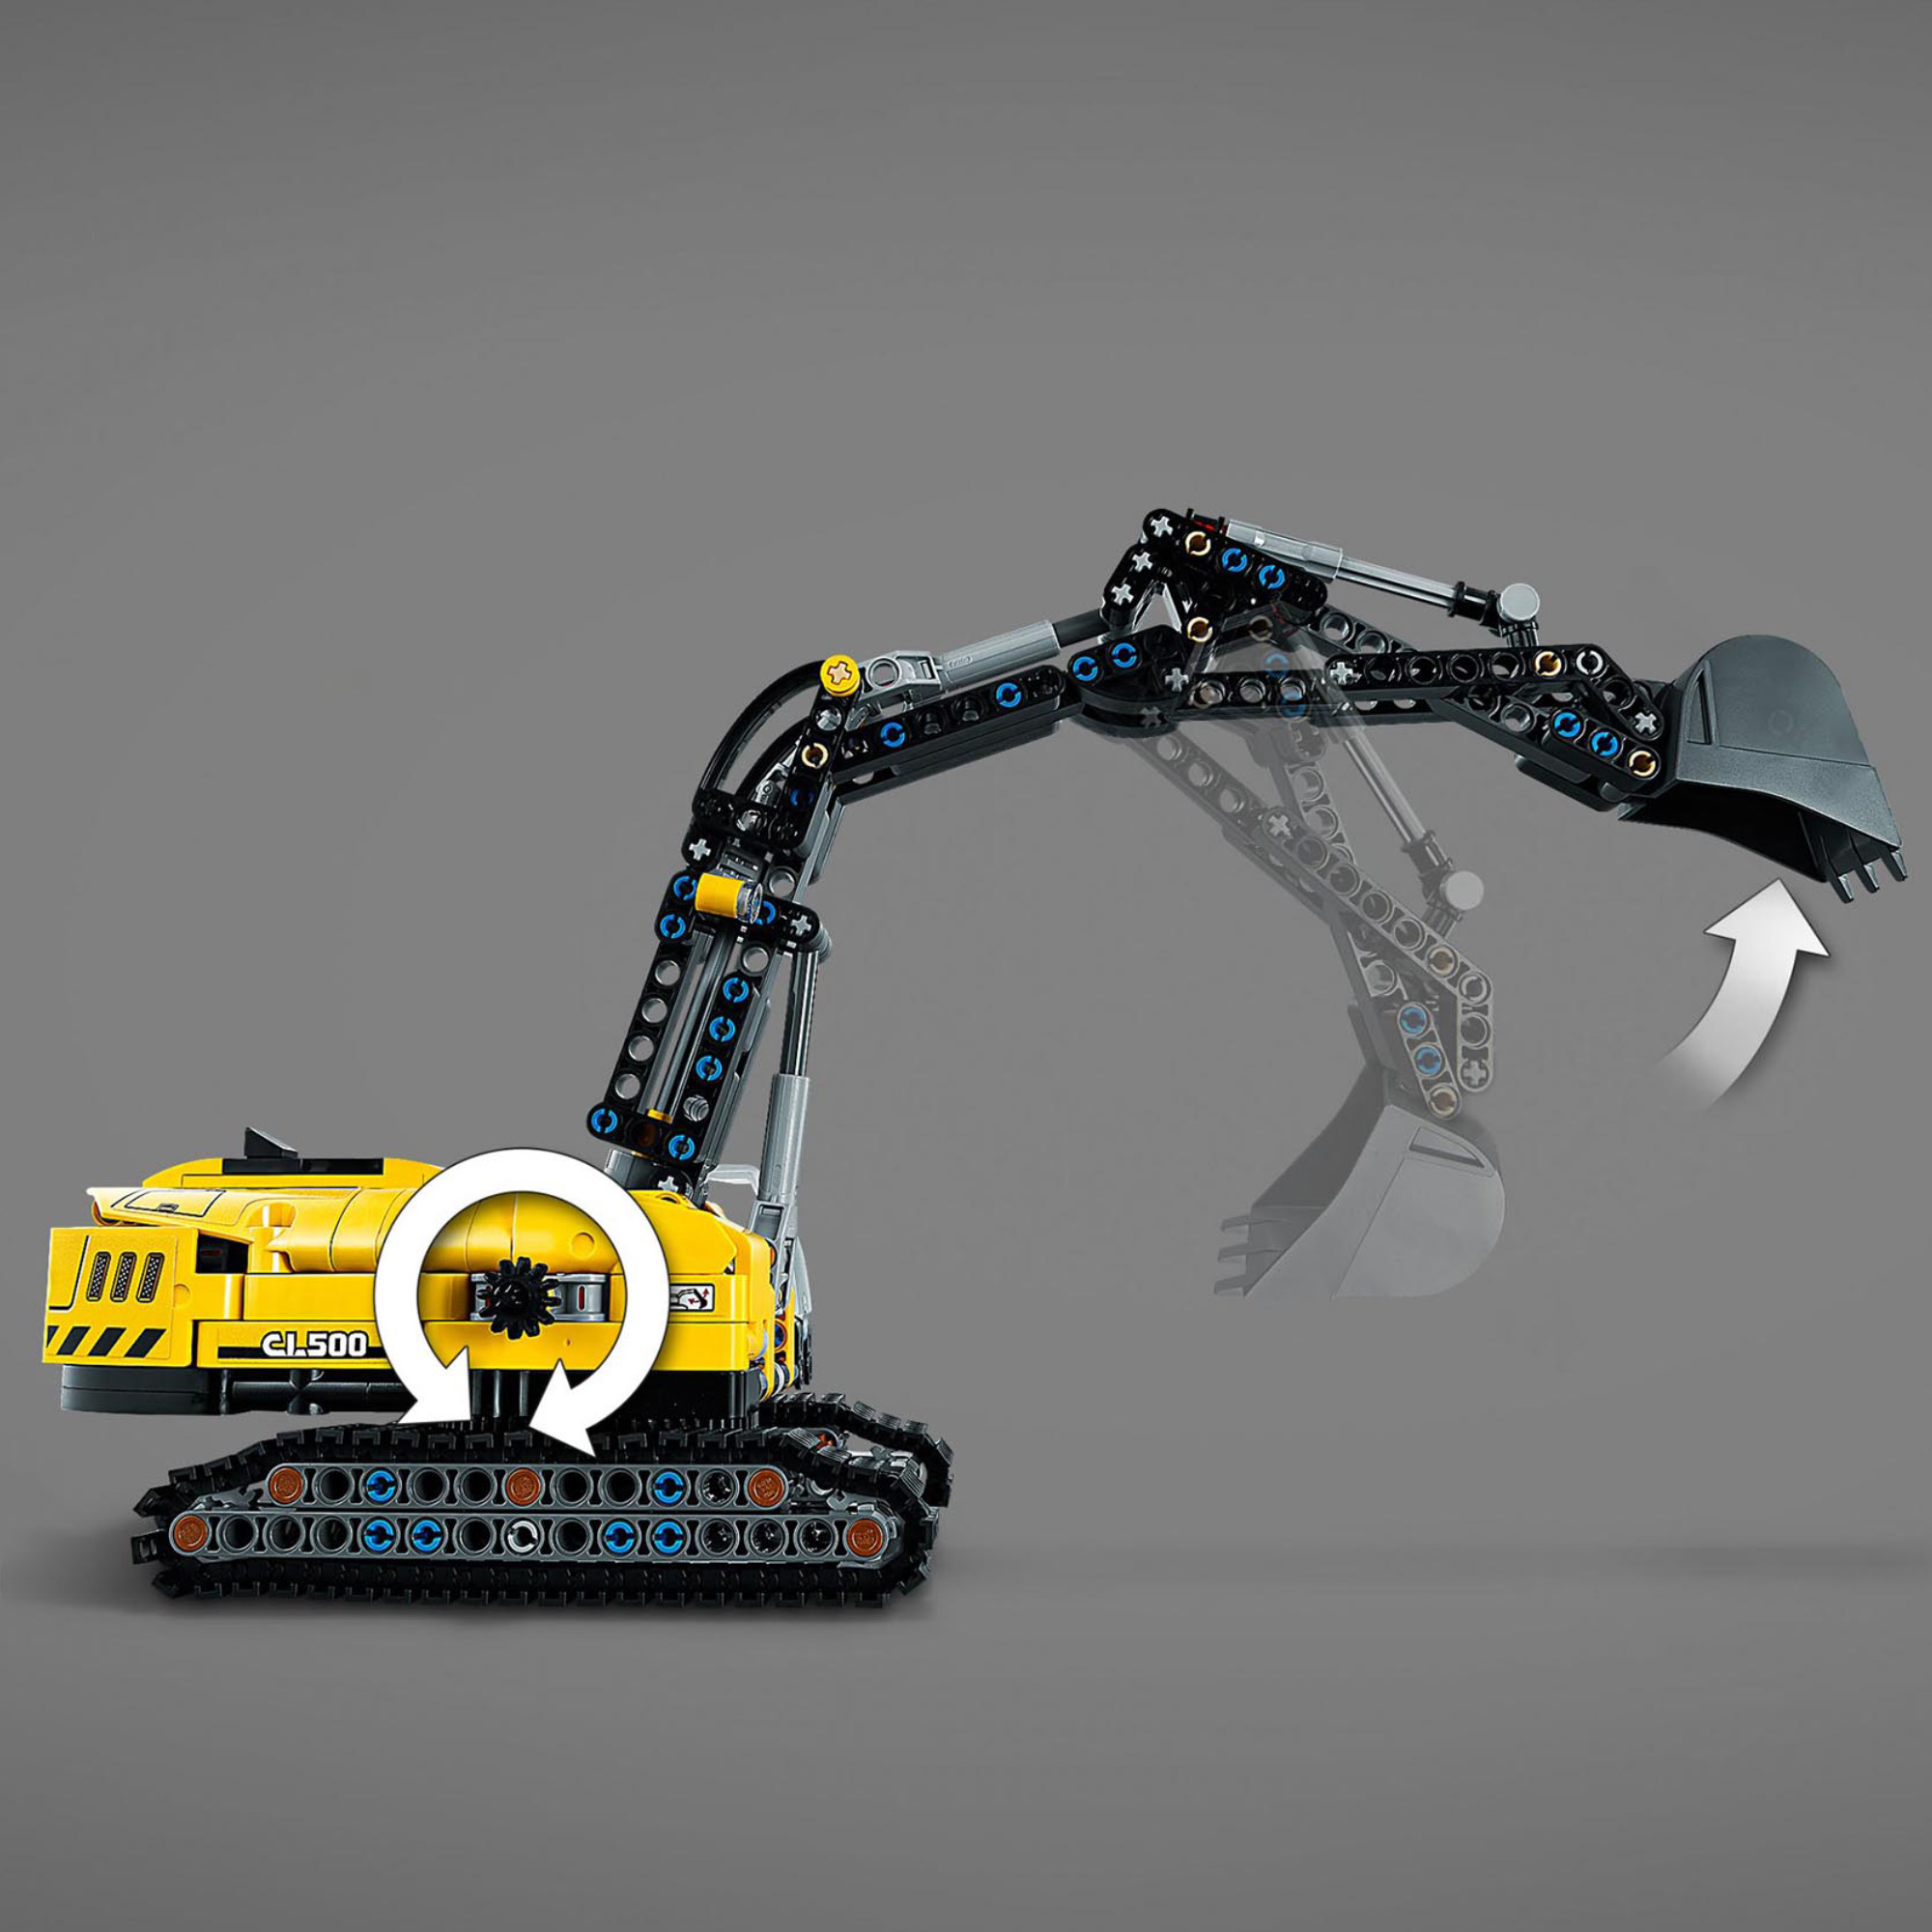 LEGO Technic Escavatore Pesante, Trattore, Modellino 2 in 1, Kit di Costruzione  42121, , large